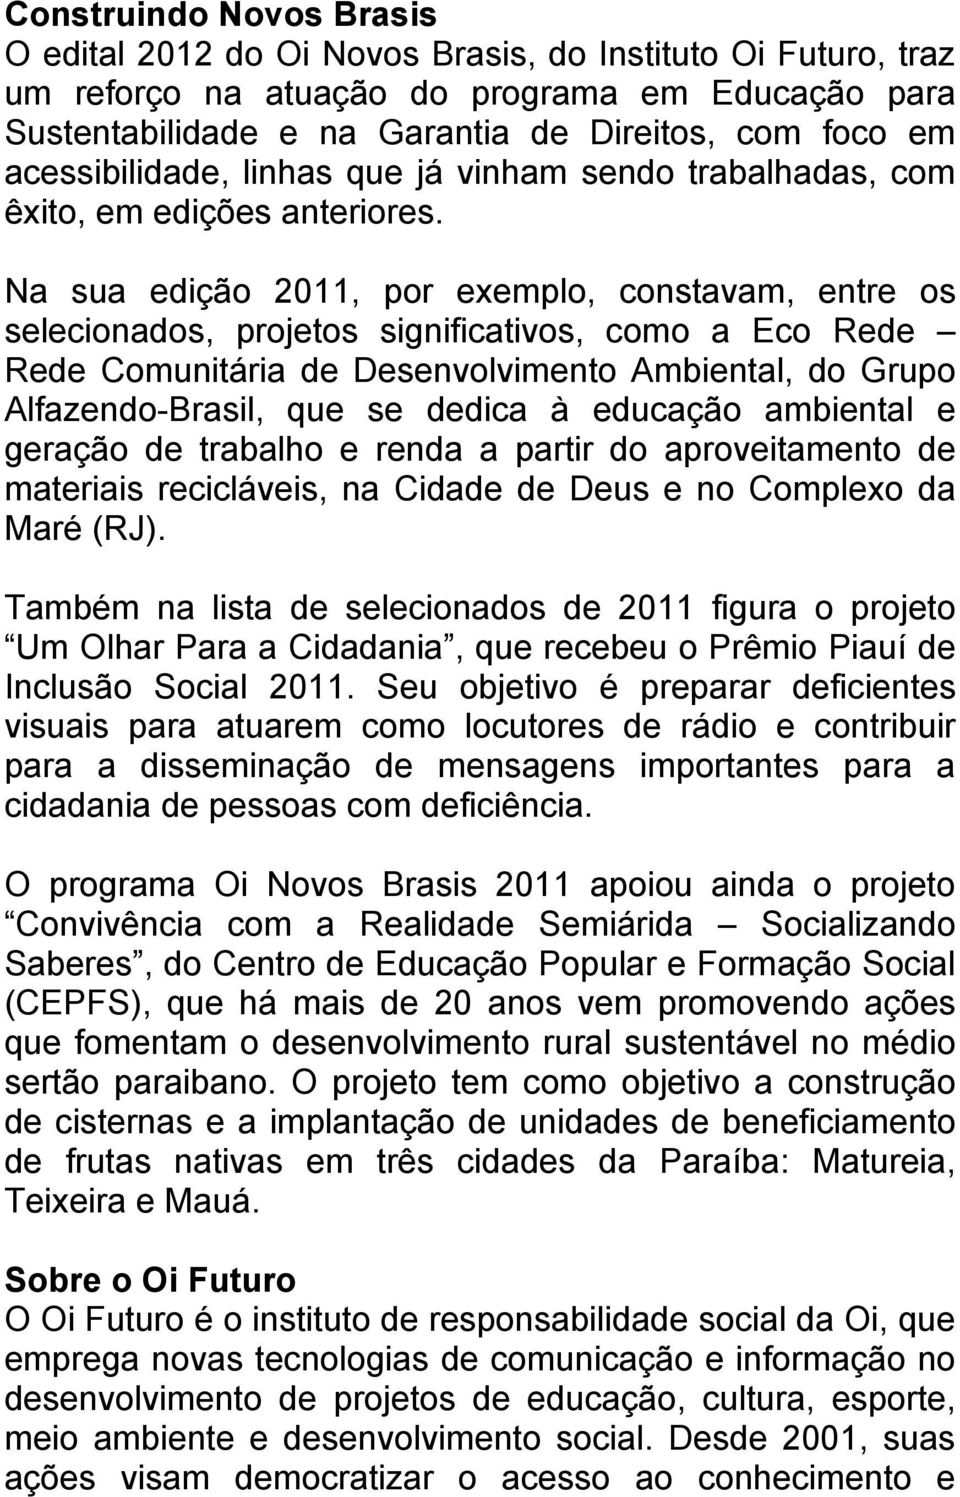 Na sua edição 2011, por exemplo, constavam, entre os selecionados, projetos significativos, como a Eco Rede Rede Comunitária de Desenvolvimento Ambiental, do Grupo Alfazendo-Brasil, que se dedica à